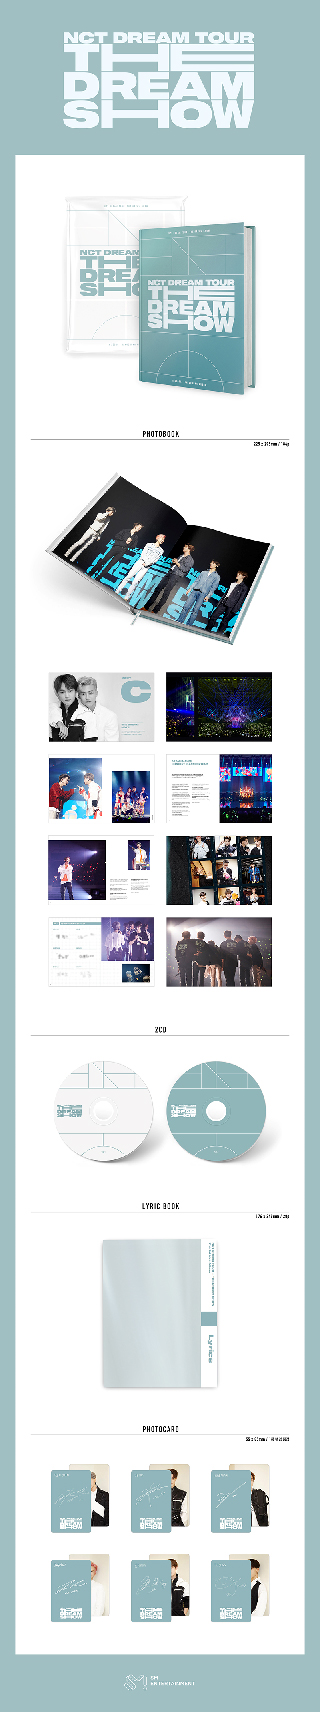 【韓国盤】NCT DREAM TOUR “THE DREAM SHOW” CONCERT PHOTOBOOK & LIVE  ALBUM（PHOTOBOOK＋2CD）